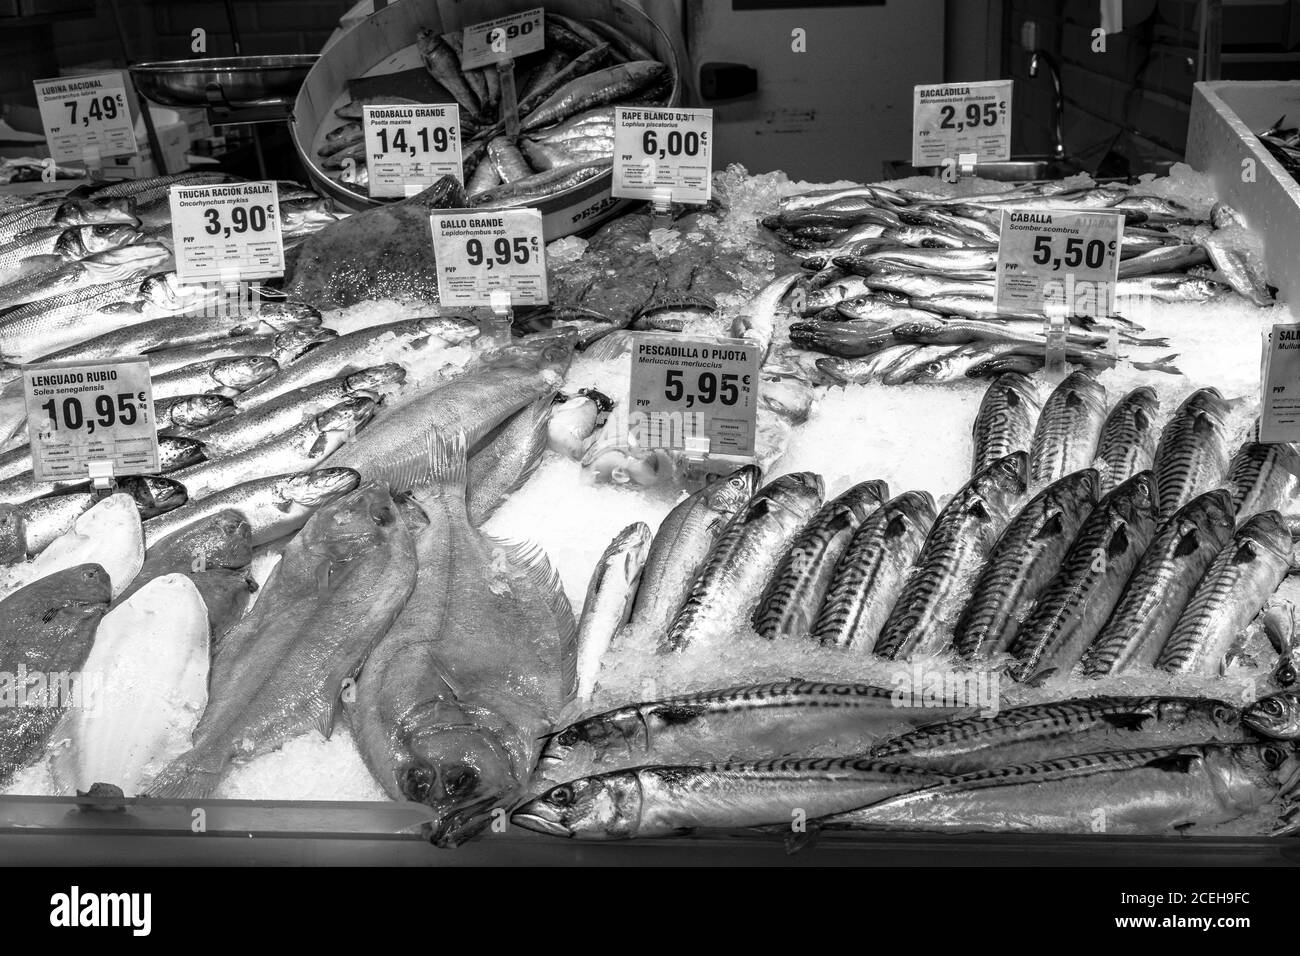 Frischer Fisch zum Verkauf auf einem Markt - Marbella, Spanien - Schwarz-Weiß-Foto Stockfoto